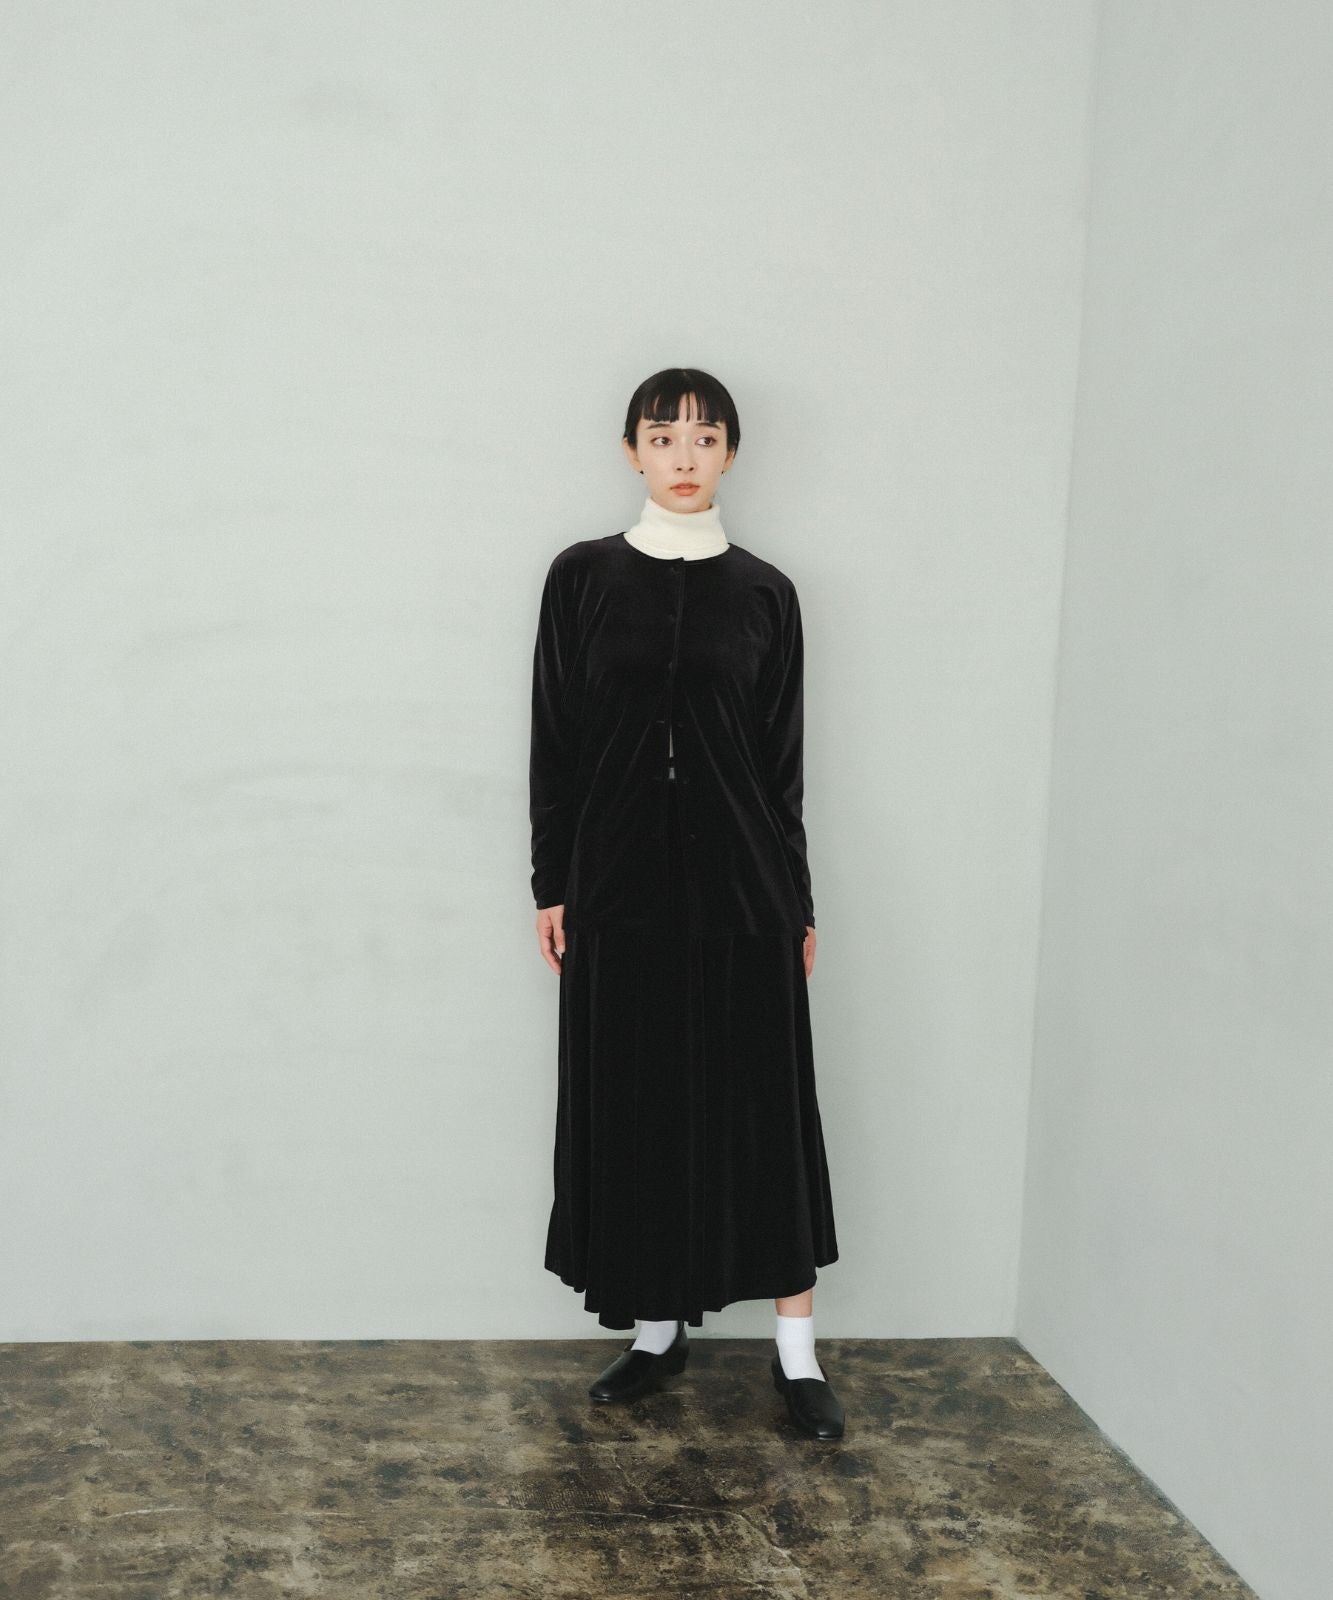 foufou / フーフー | THE DRESS #25 velour flare skirt ベロアフレアスカート | 1 | ブラック | レディース